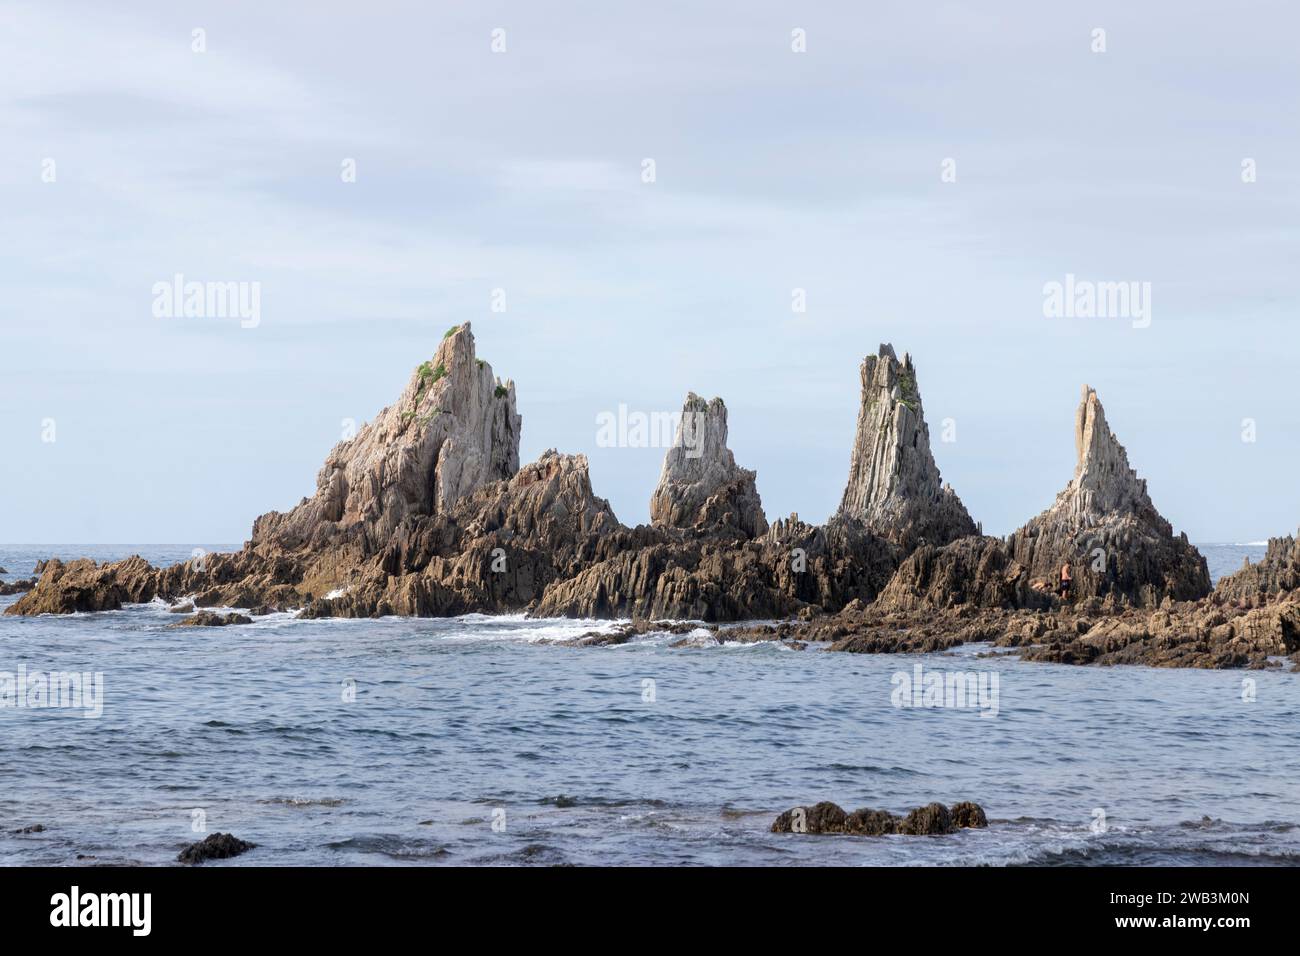 Felsformationen, die aus einem ruhigen Meer ragen, unter einem teilweise bewölkten Himmel, bilden eine ruhige, aber zerklüftete Küstenlandschaft in asturien Stockfoto